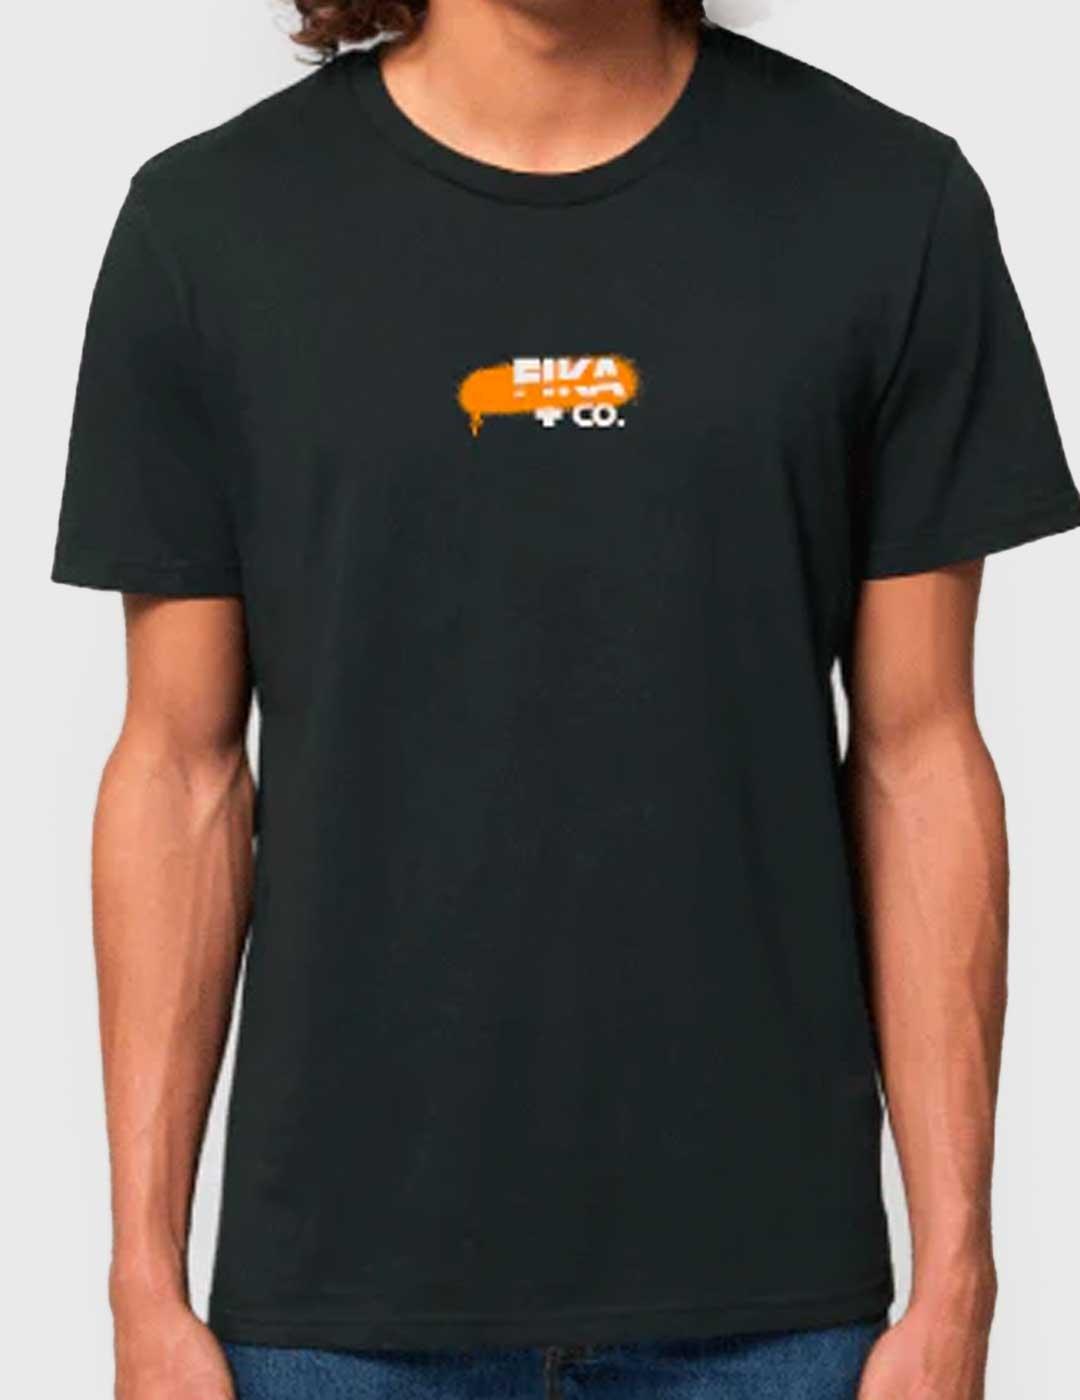 Camiseta Fika & Co Cars Lover negra para hombre